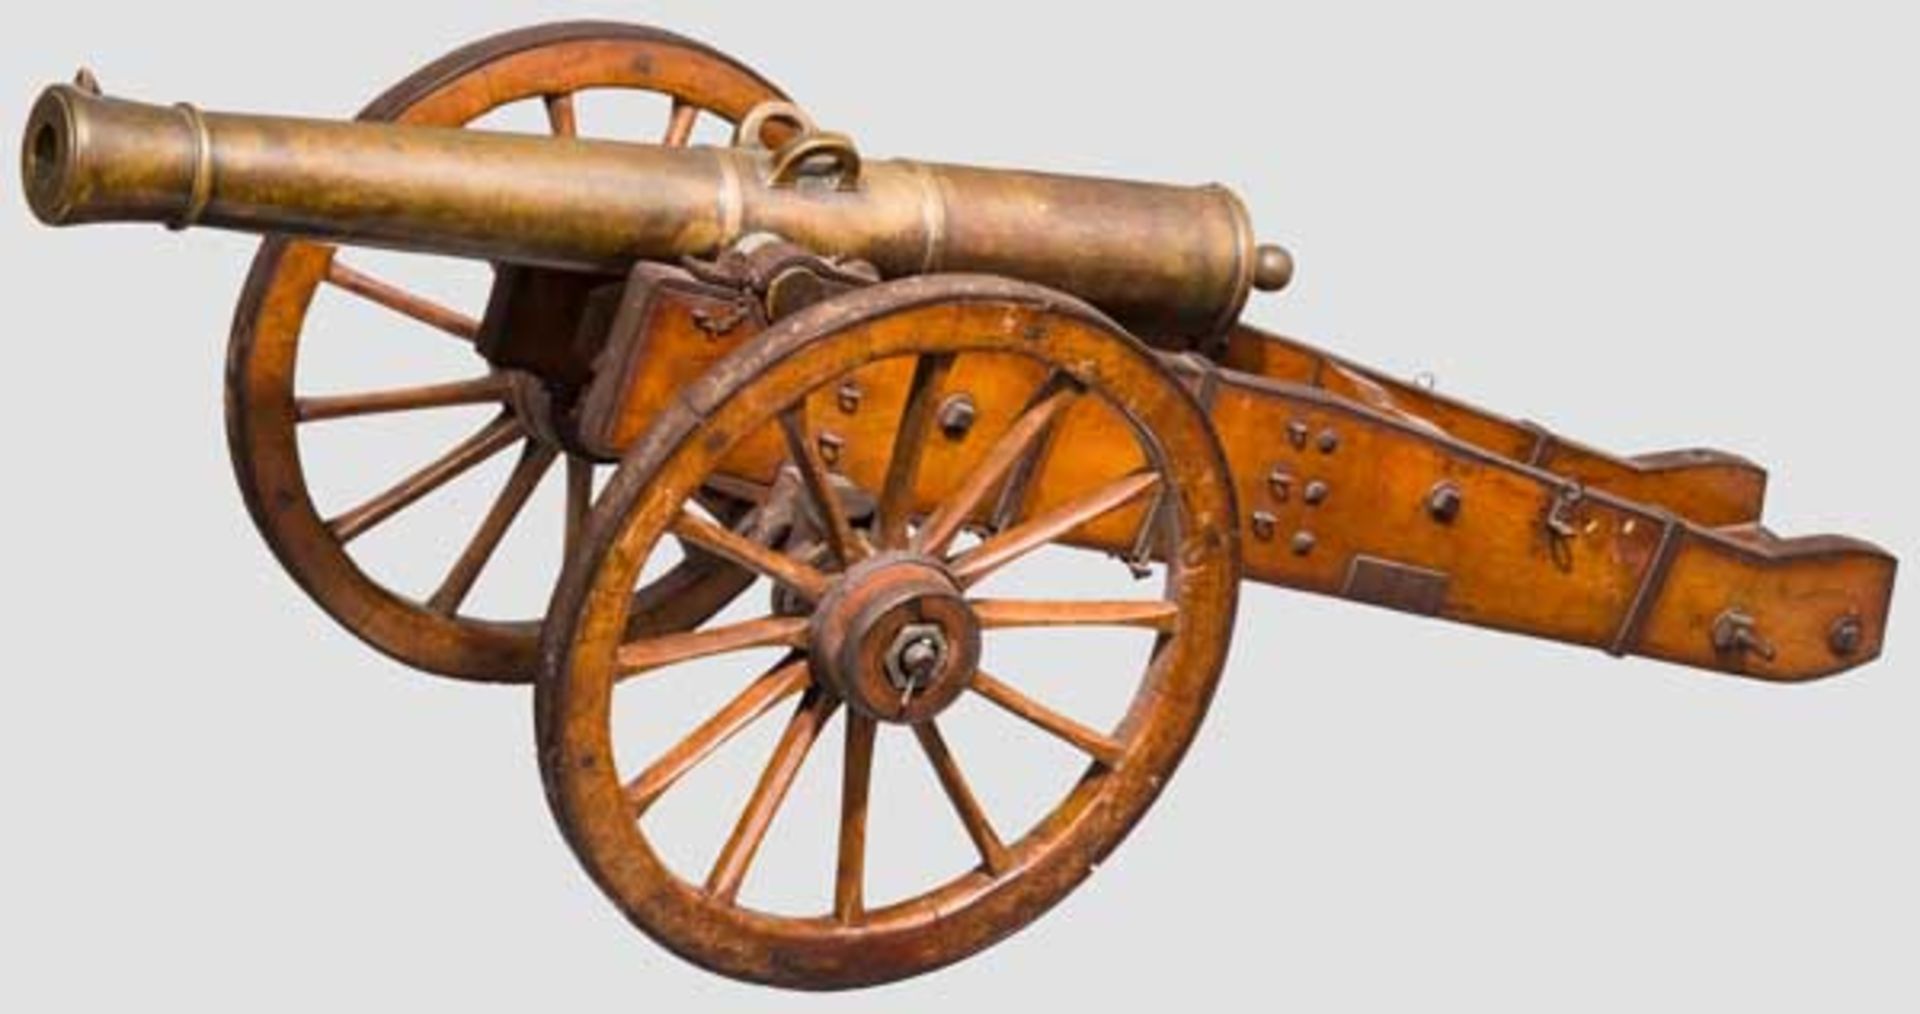 Modell eines Feldgeschützes, 19. Jhdt. Bronzerohr im Kaliber 19,5 mm, kanonierte Mündung, Vorder-,